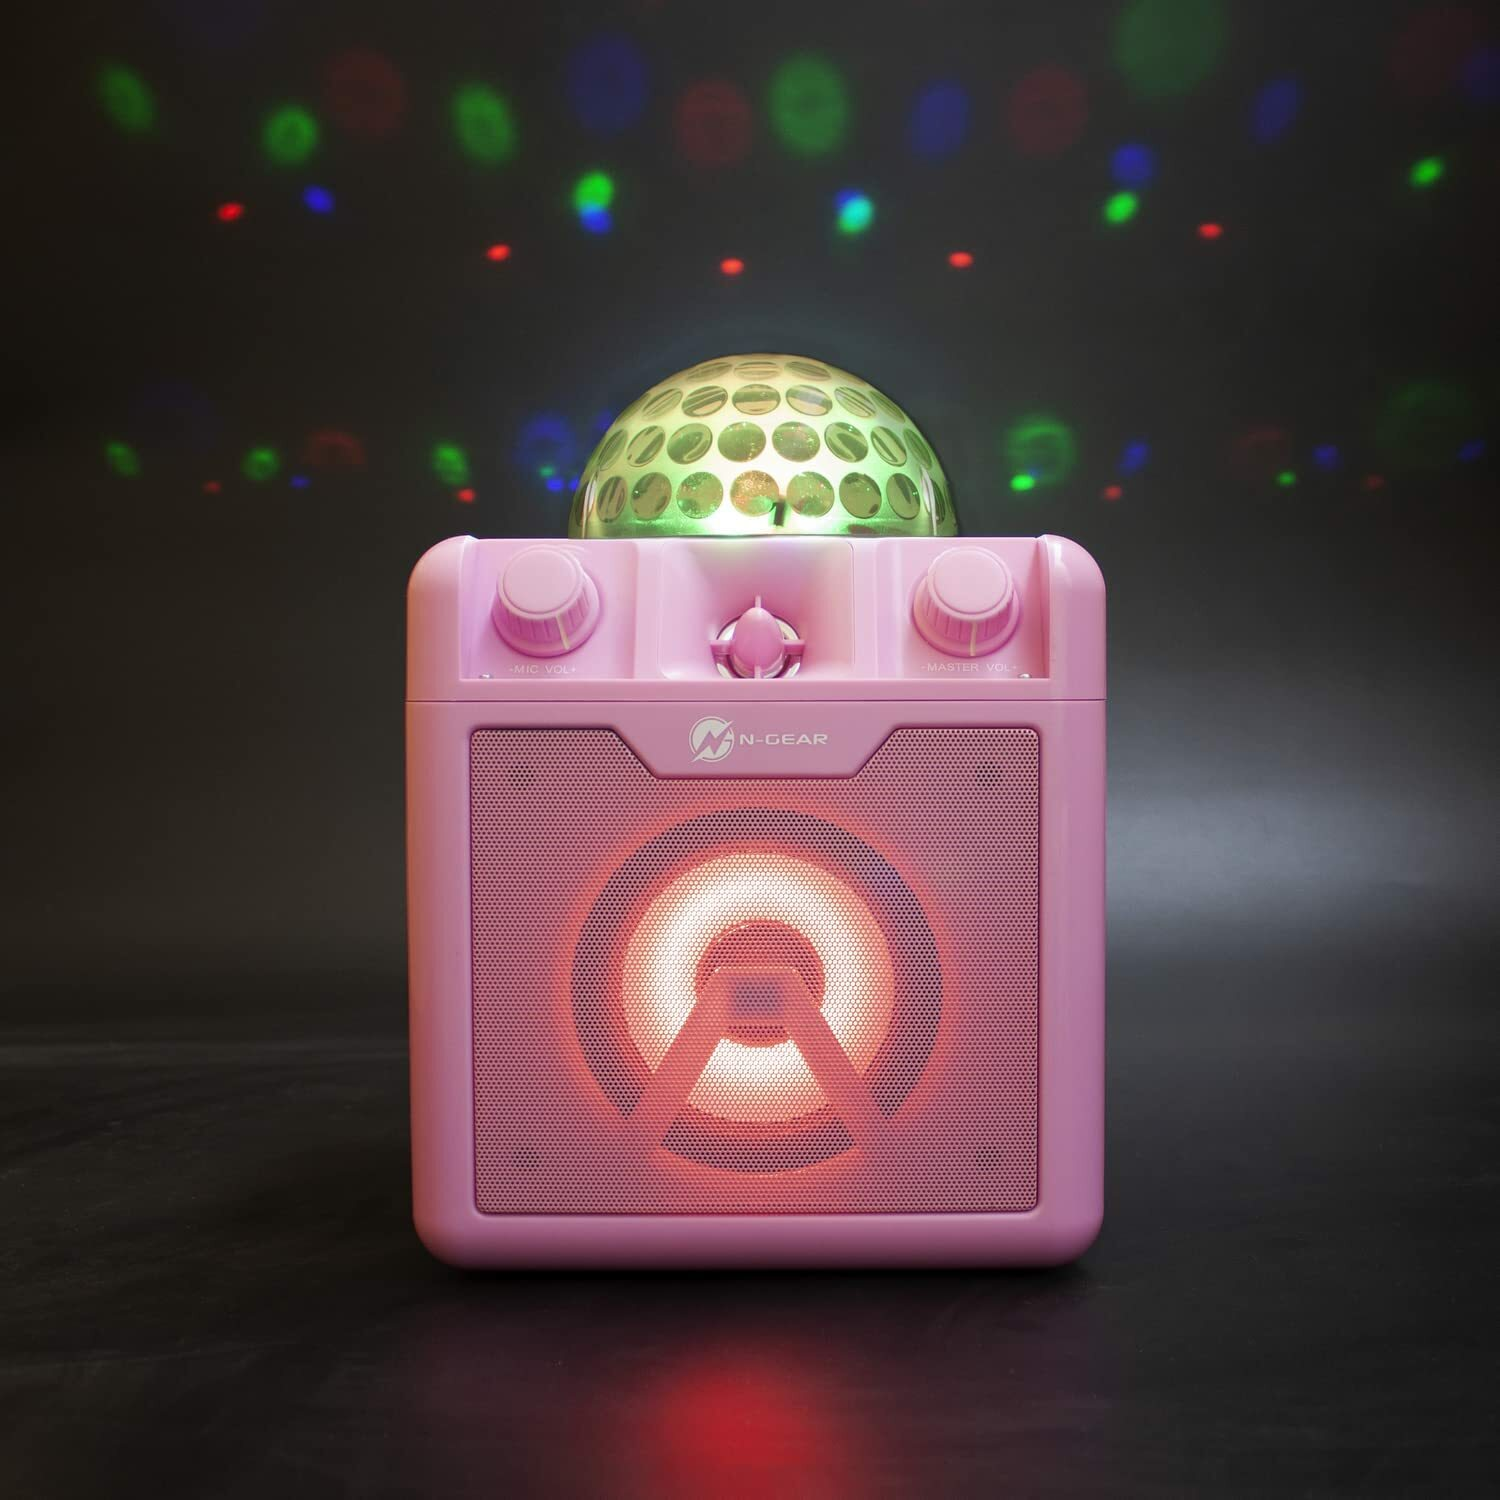 N-GEAR DISCO410-PK pink Karaoke-Lautsprecher,